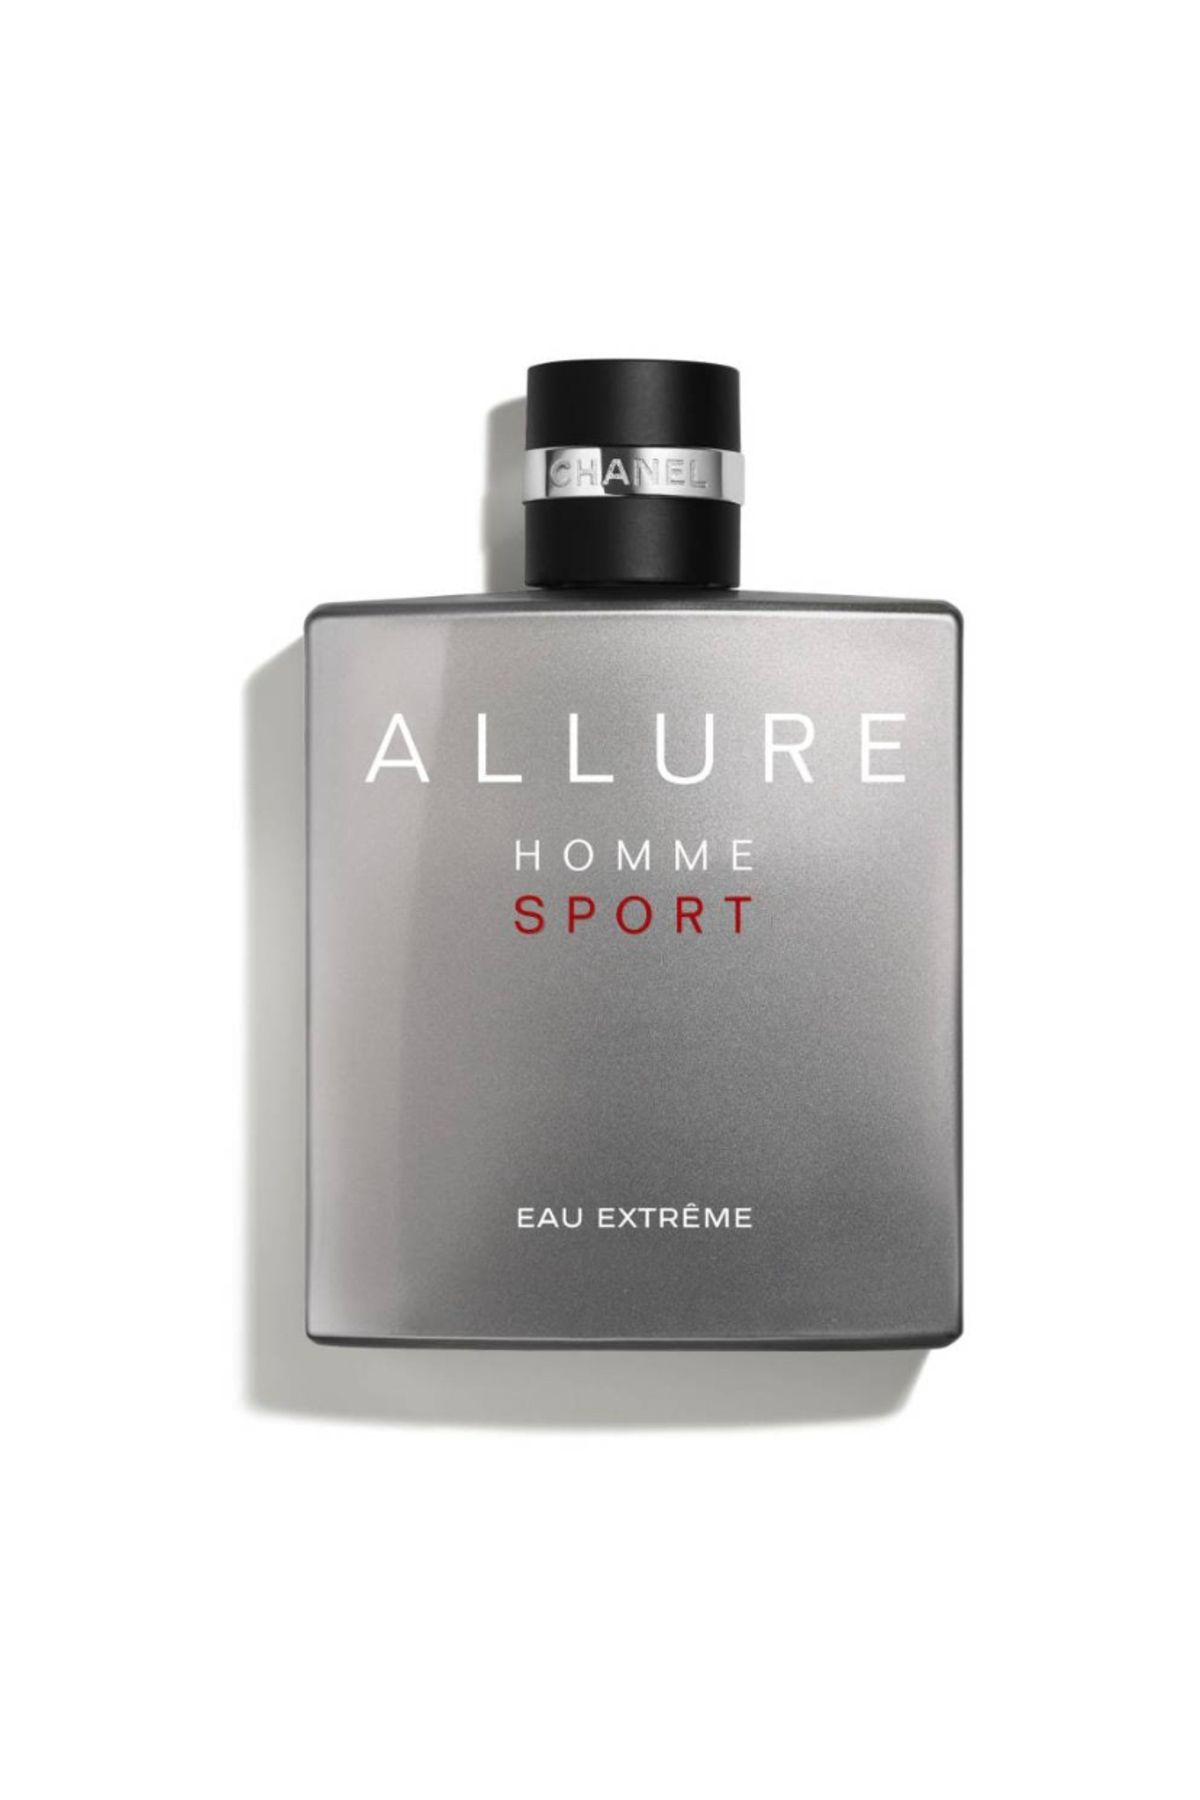 Chanel ALLURE HOMME SPORT eau Extreme Erkek Parfüm 150ml Pinkestcosmetics